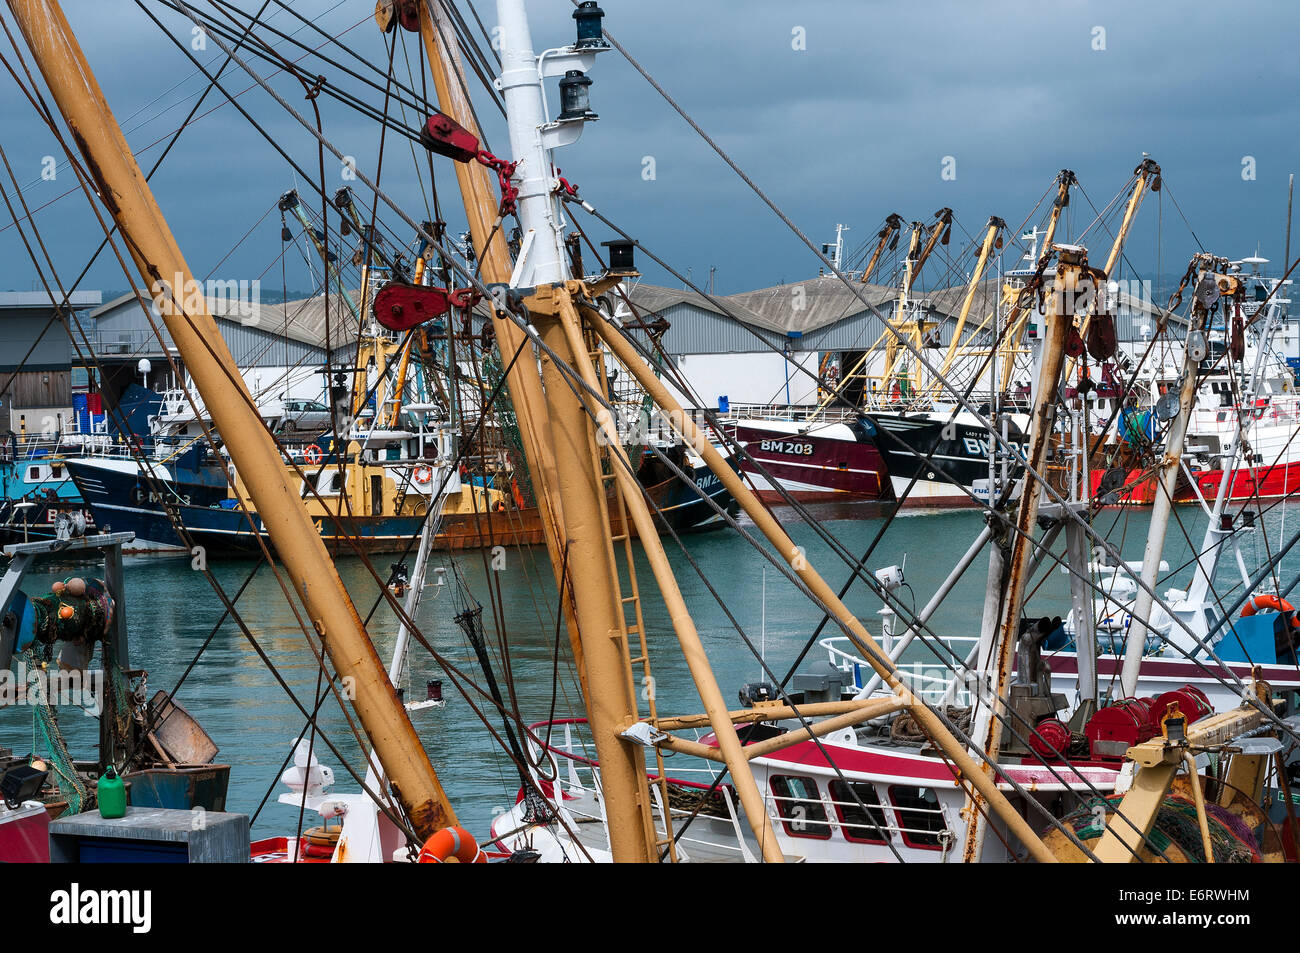 Brixham Fischereiflotte im Hafen, Strand, Strahl Trawler, Englisch Baumkurrentrawlern, South Devon, England, Angeln, Schwimmen, groß, Ferien Stockfoto